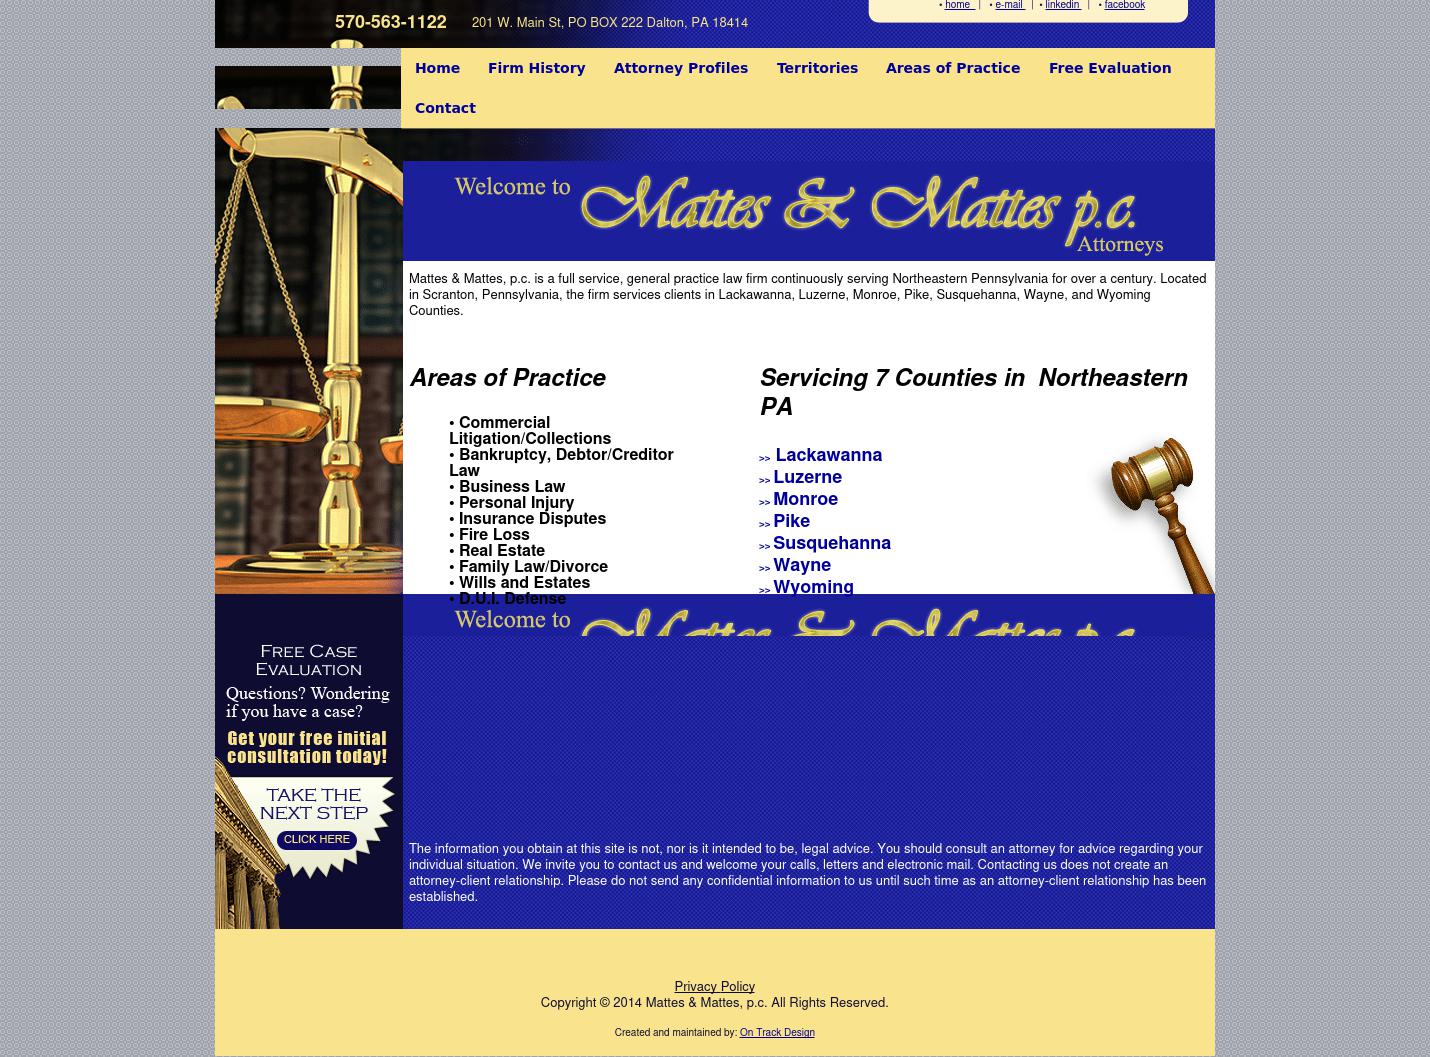 Mattes & Mattes, P.C. - Scranton PA Lawyers